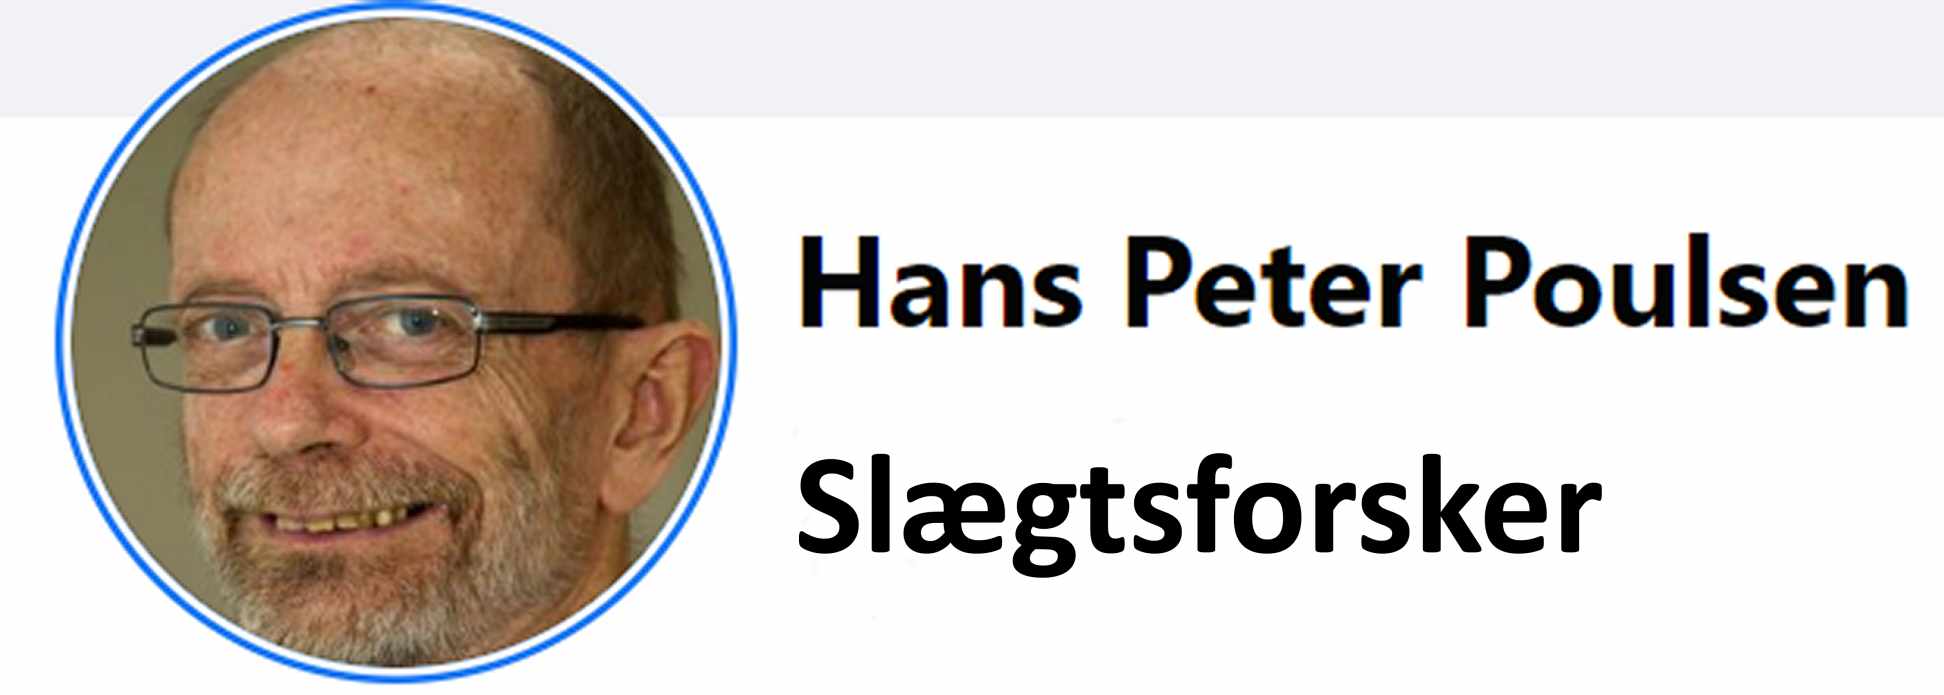 Hans Peter Poulsen - Historisk Forening, Dragør